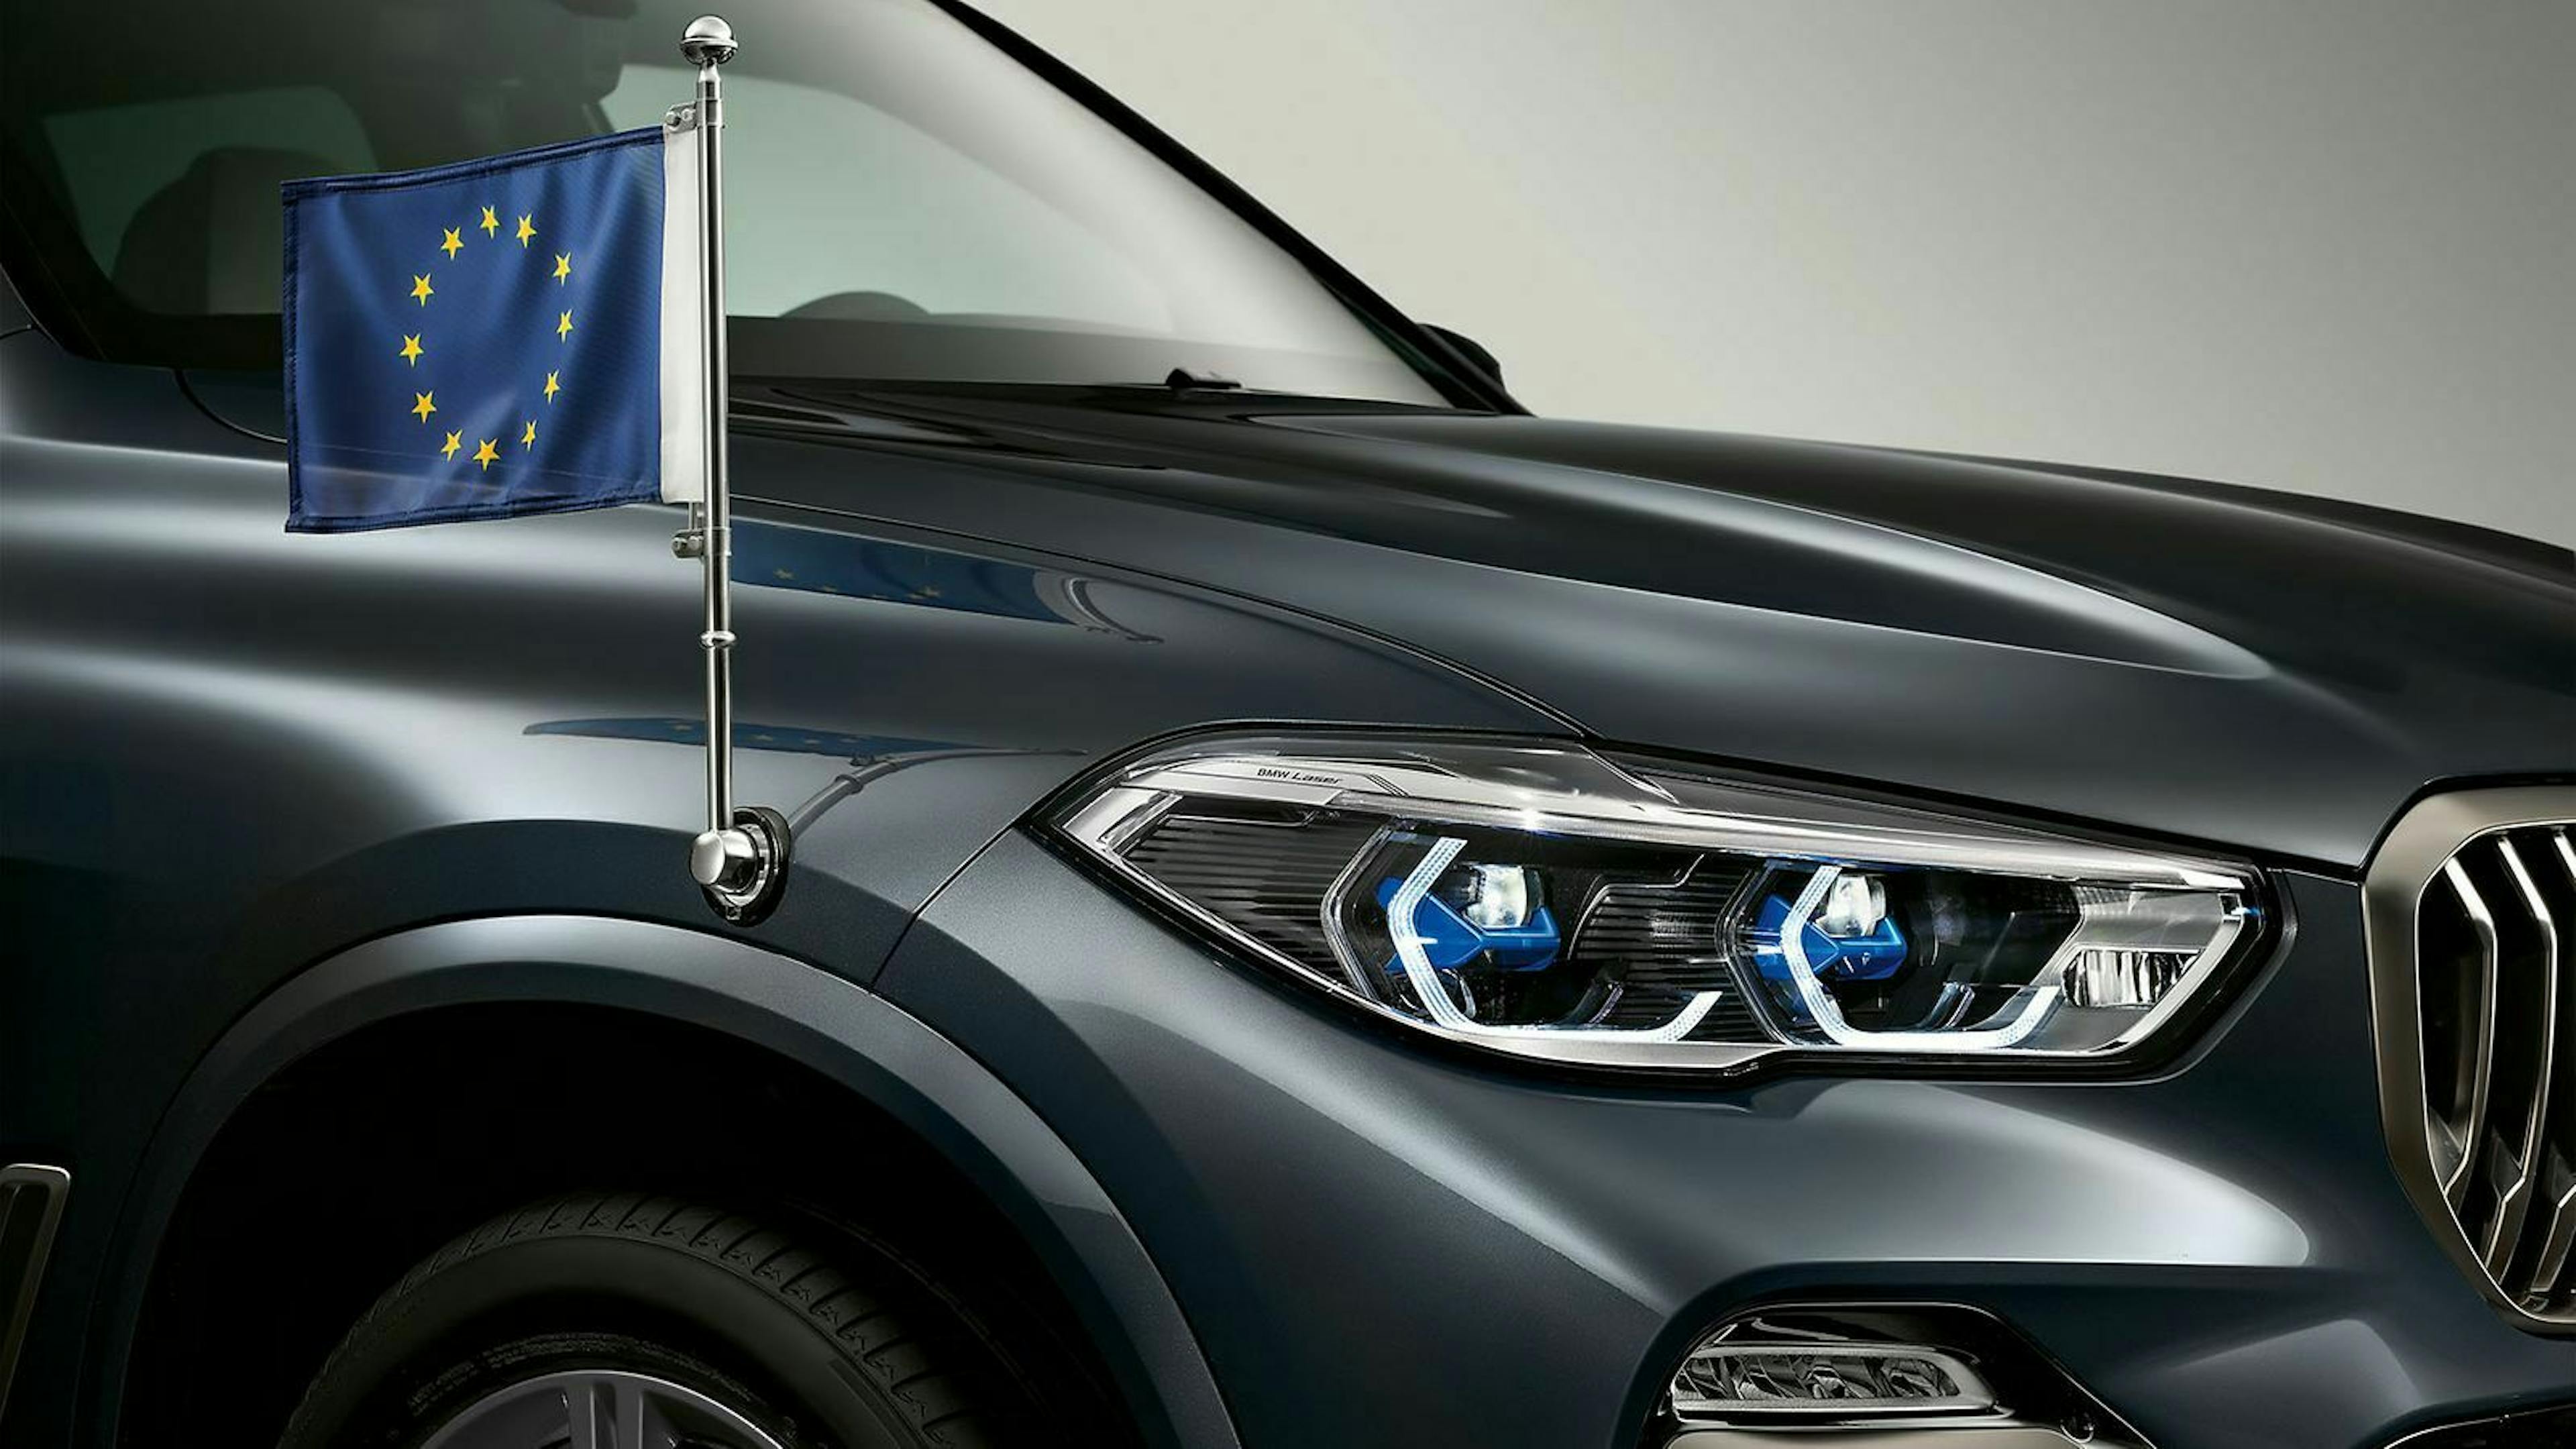 Die Gegensprechanlage des BMW X5 ermöglicht den Insassen die Kommunikation mit aussenstehenden Personen